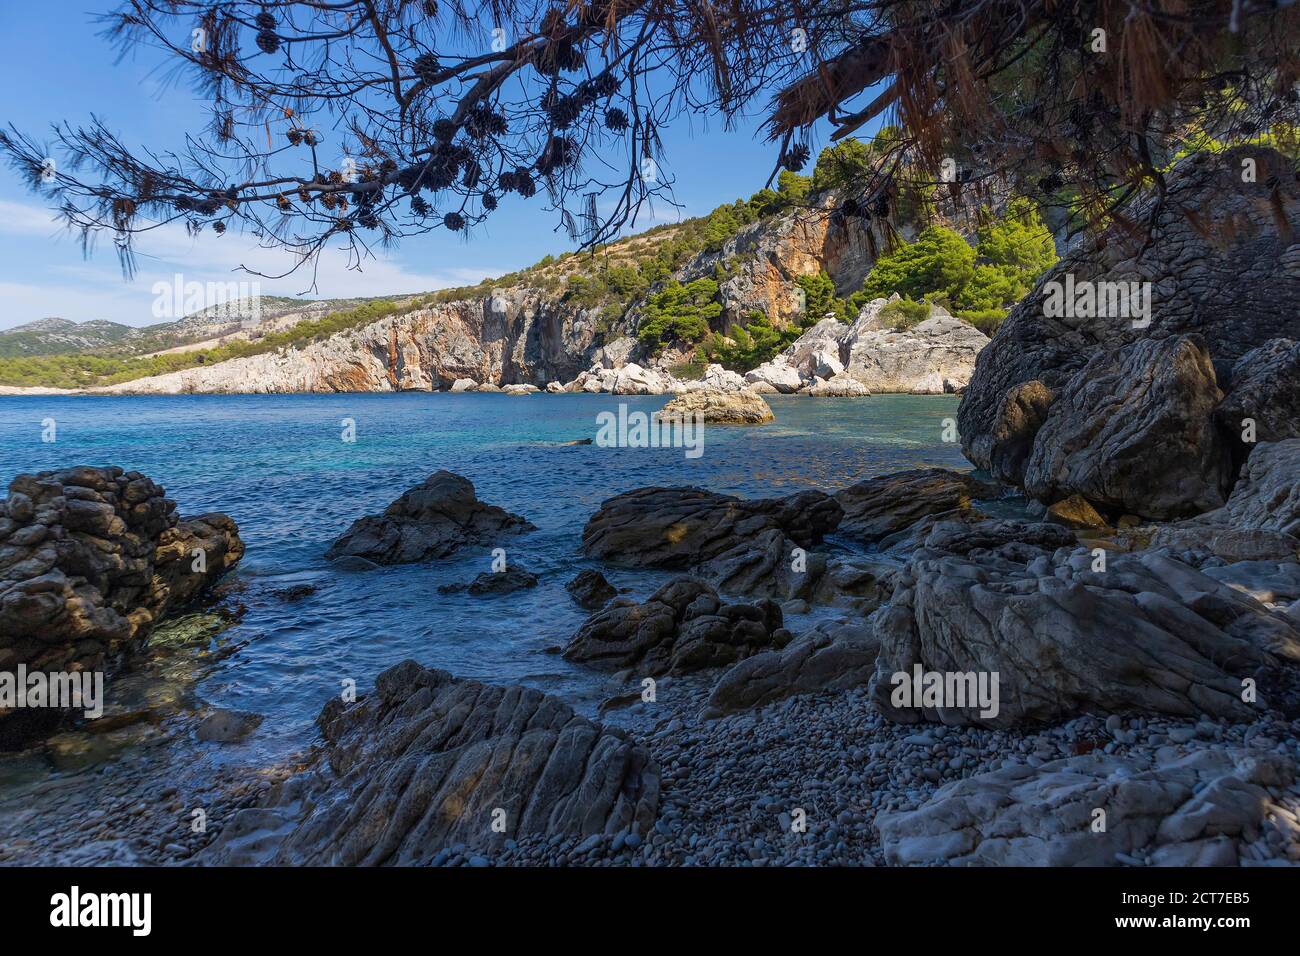 Incredibile natura dell'isola di Hvar con ripide scogliere rocciose che si innalzano sull'appartata spiaggia 'Zarace', circondata da turchese, mare adriatico Foto Stock